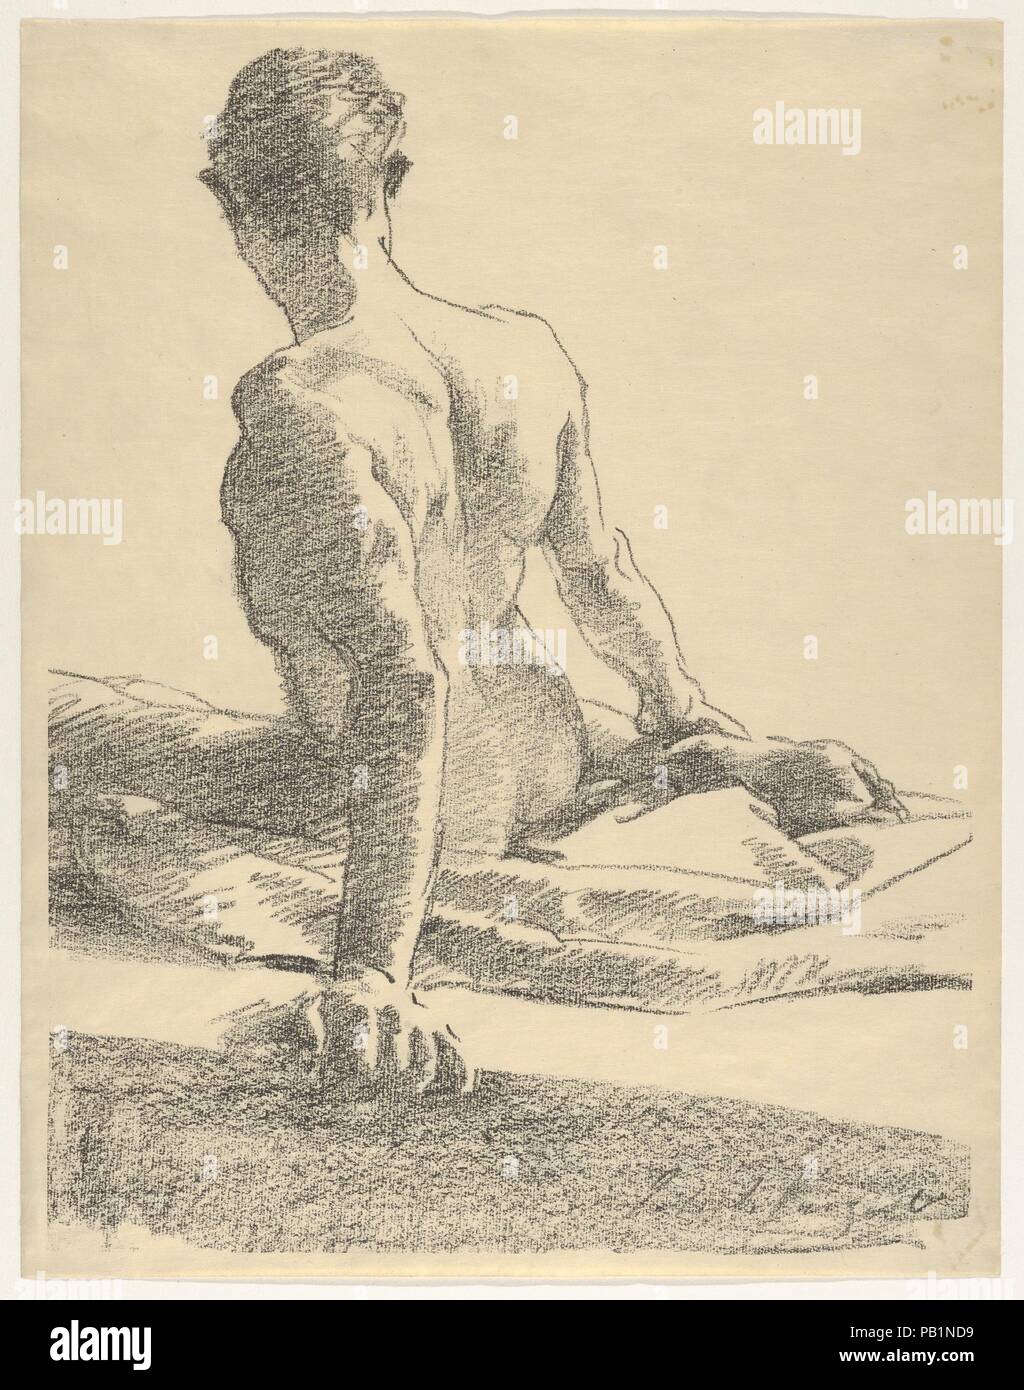 Estudio de un hombre joven, visto desde la parte posterior. Artista: John Singer Sargent (American, Florencia Londres 1856-1925). Dimensiones: Hoja: 12 3/8 x 9 5/8 in. (31,5 × 24,4 cm). Fecha: 1895. En octubre de 1895, Galerie Rapp en París organizó una sección de una gran exposición en el Palais des Beaux-Arts que marcaron el centenario de la invención de la litografía por Aloys Senefelder. La impresora británico Frederick Goulding, quien ha desarrollado un papel de transferencia mejorada de litografía, participa en el espectáculo, y animó a Sargent y otros artistas londinenses para participar, incluso ofrecido suministrar Foto de stock